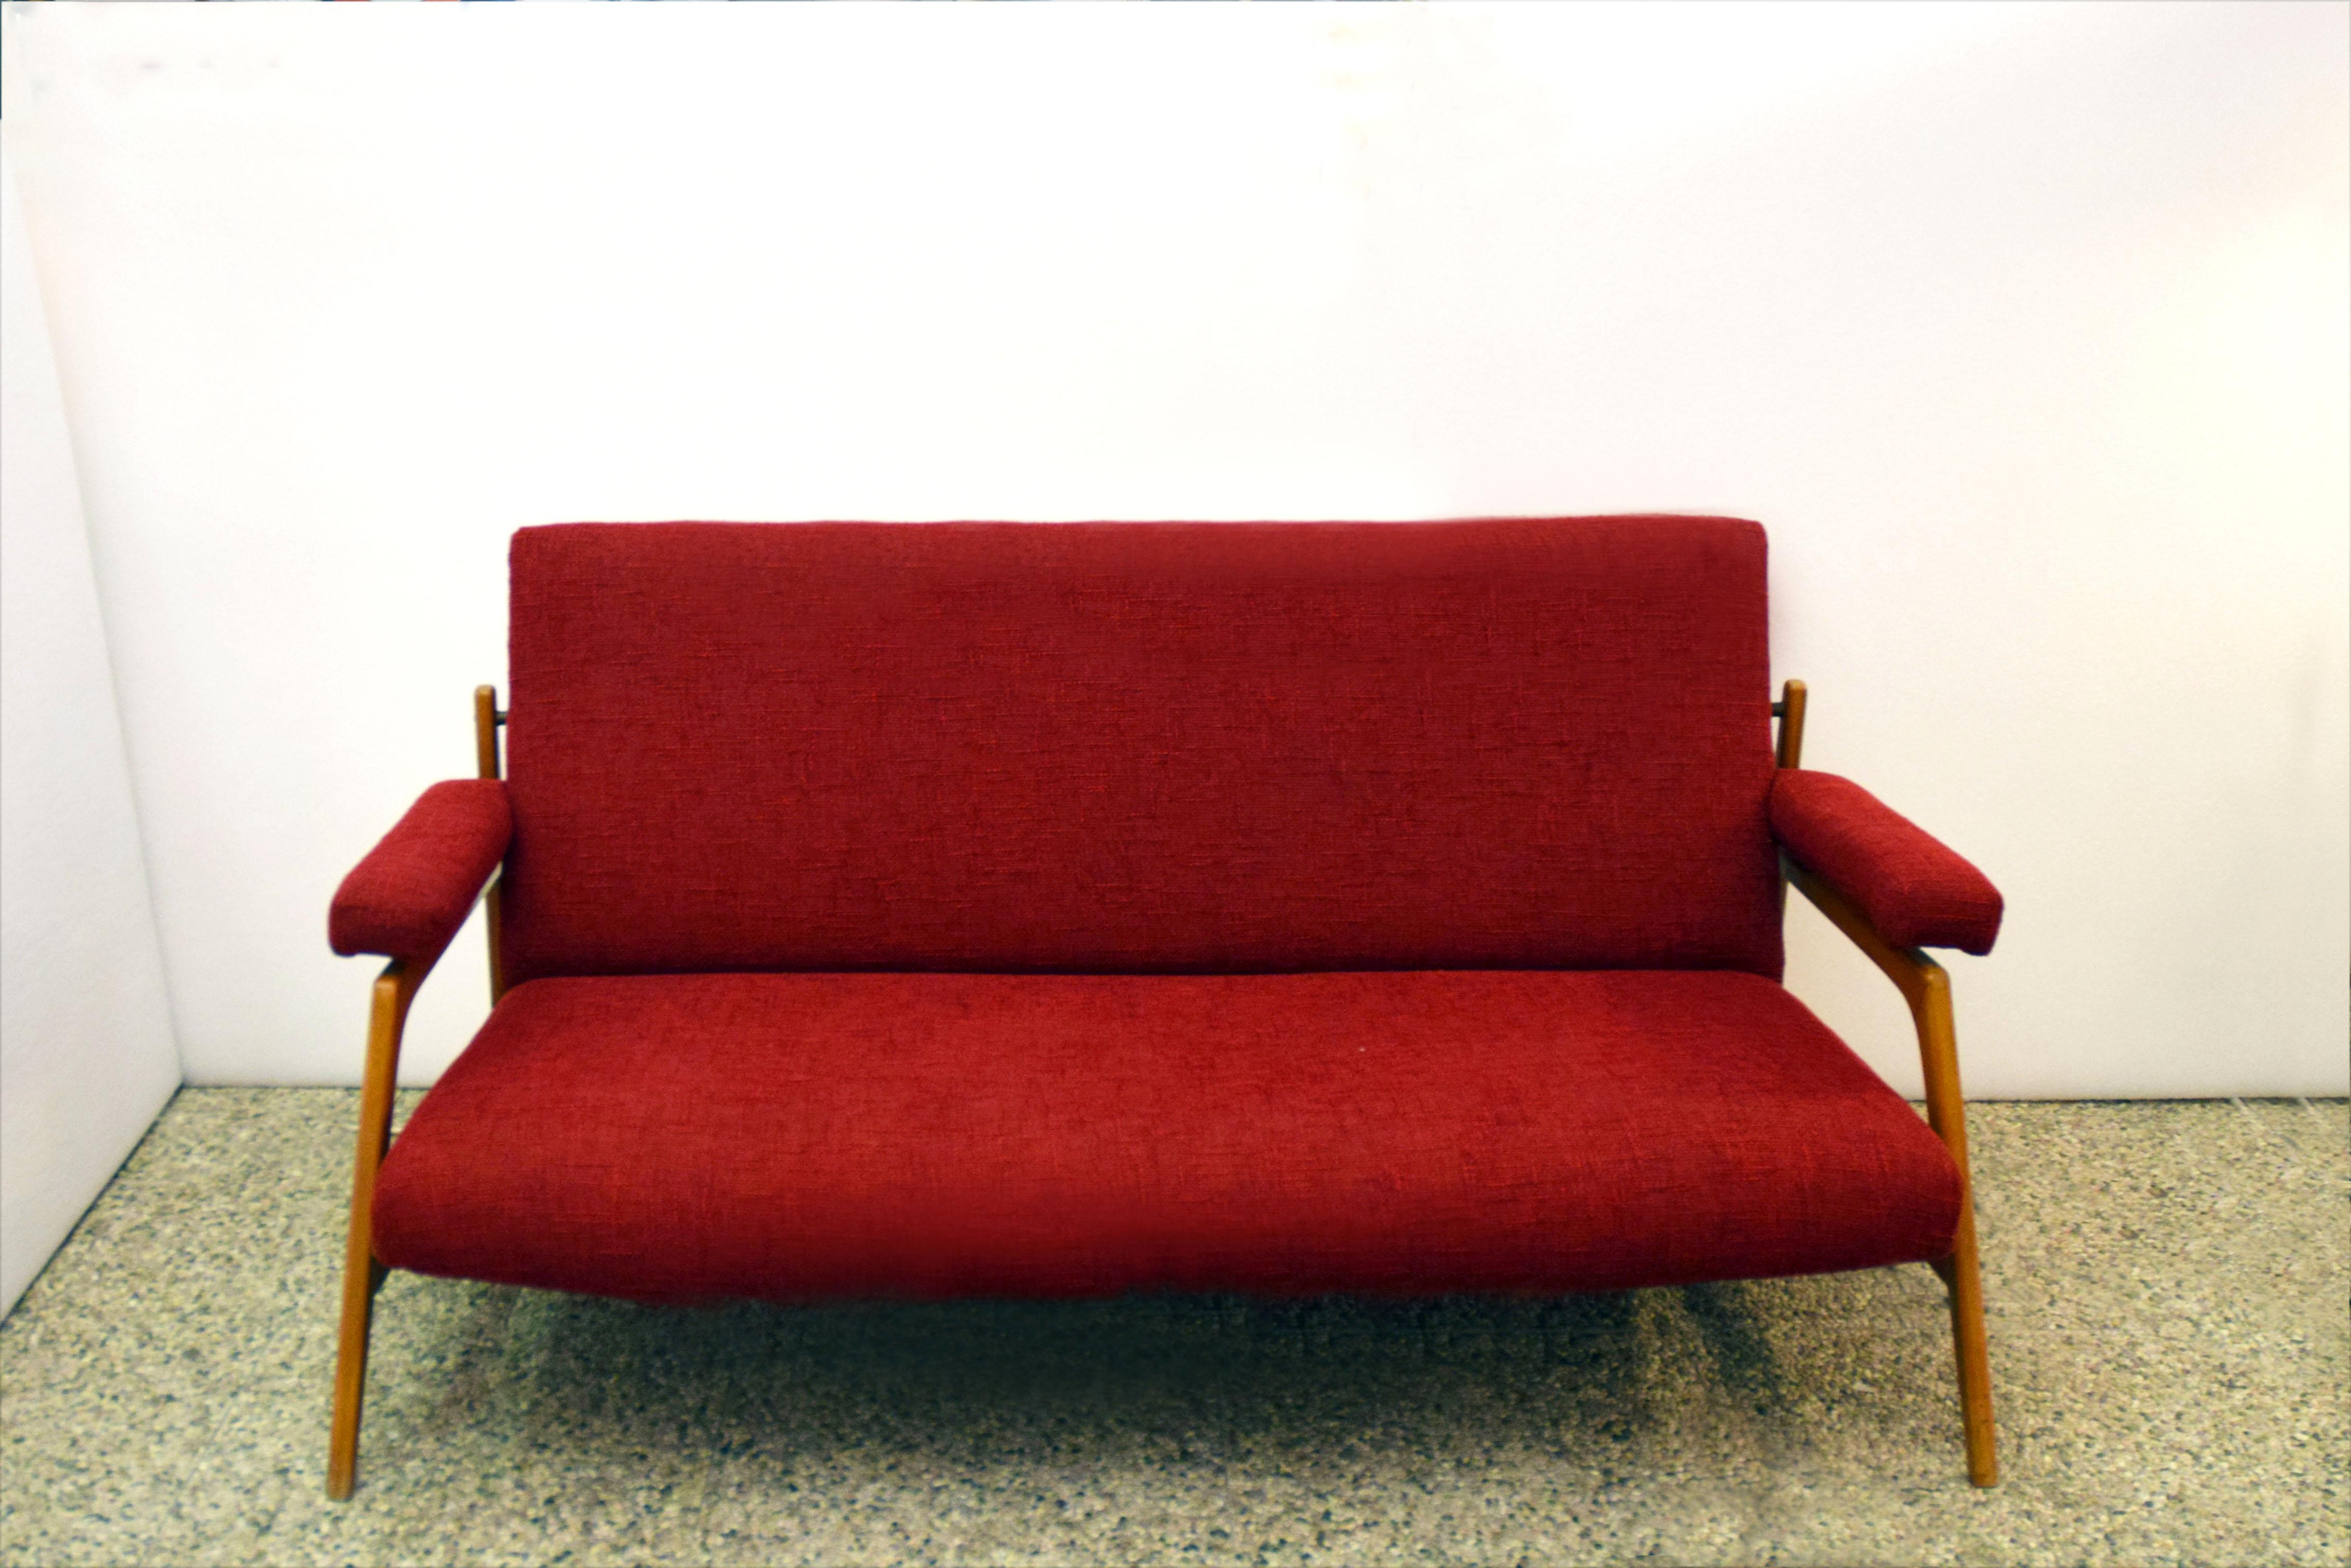 Komplettes Wohnzimmer mit zwei Sesseln und einem dreisitzigen Sofa, skandinavische Produktion der 1960er Jahre.
Struktur aus Ahornholz mit Sitz, Rückenlehne und Armlehnen aus Stoff, Details und Gelenke aus Messing.
In ausgezeichnetem